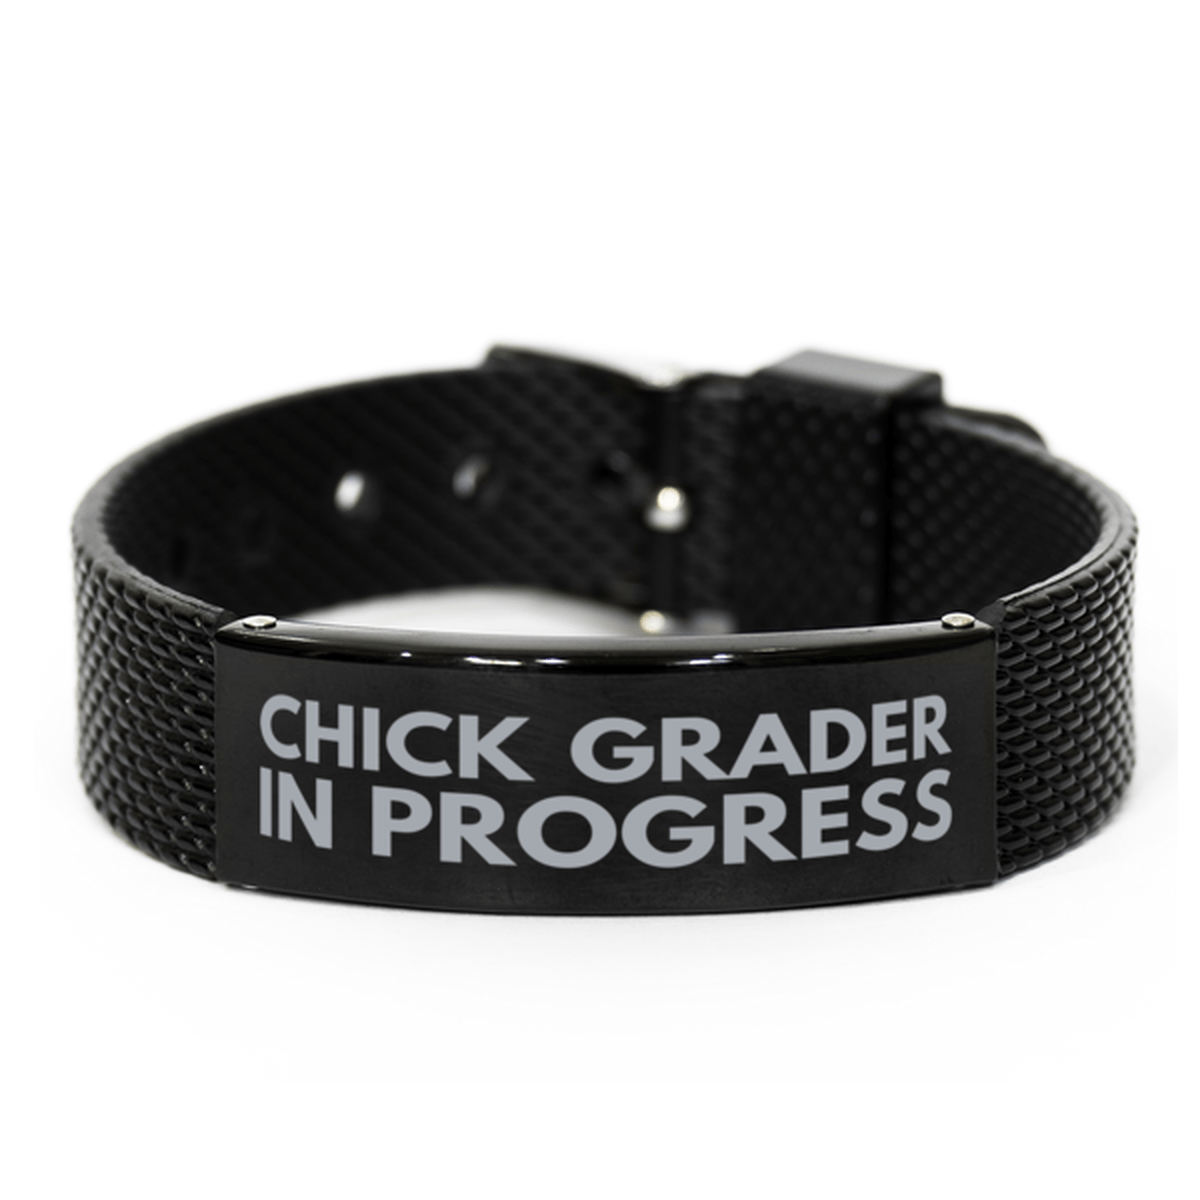 Inspirational Chick Grader Black Shark Mesh Bracelet, Chick Grader In Progress, Best Graduation Gifts for Students